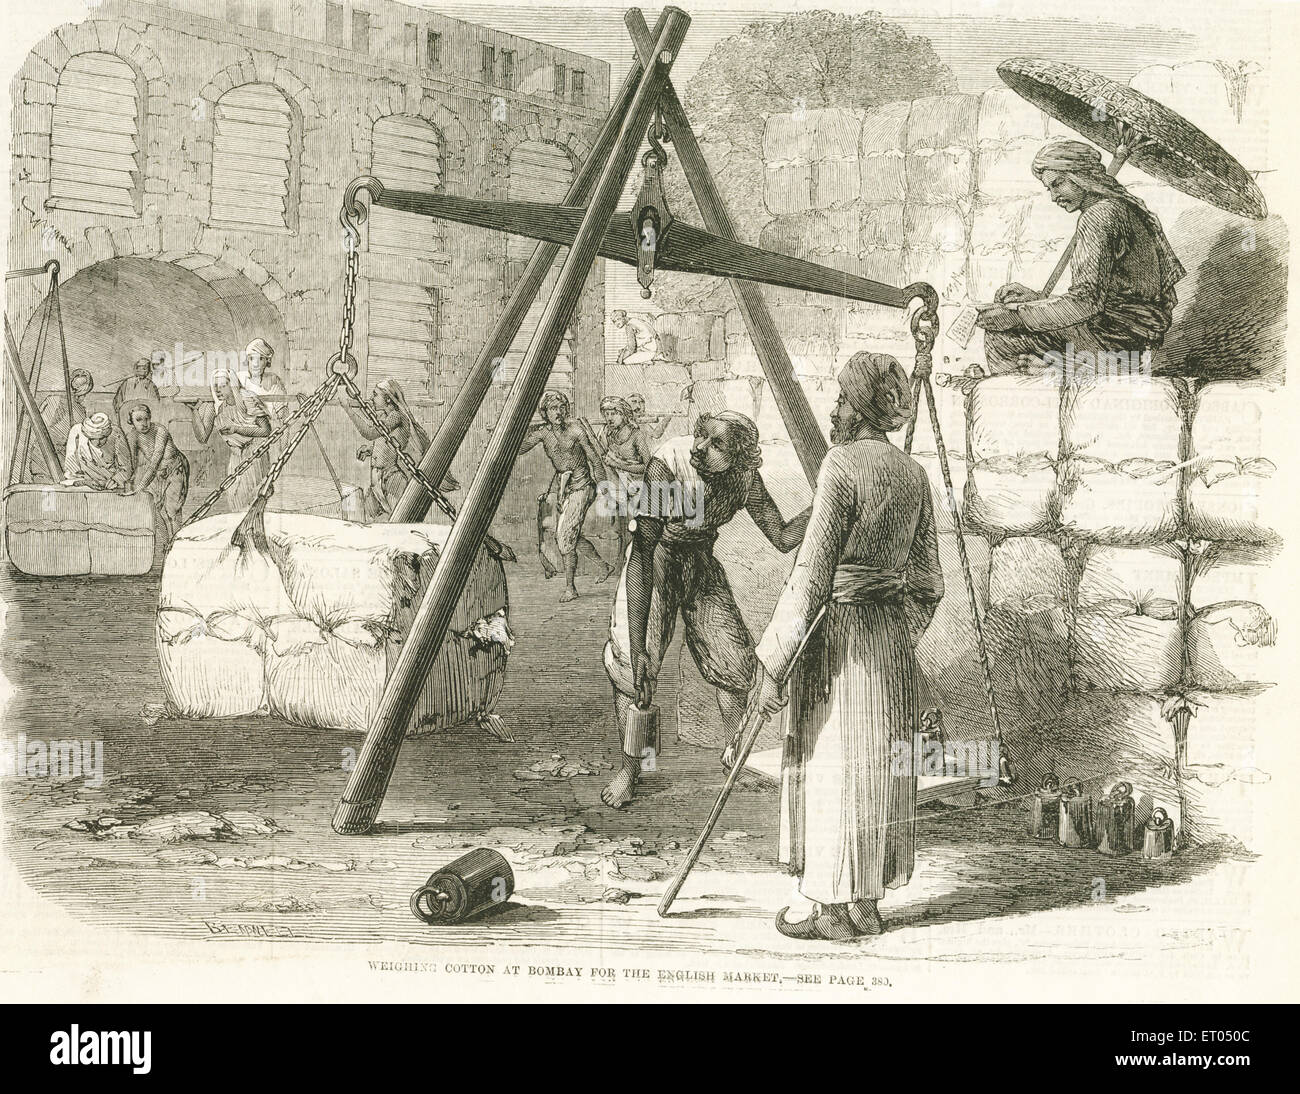 Wiegen von Baumwolle für den Export für den englischen Markt; Bombay; Mumbai; Maharashtra; Indien; Asien ; alter Jahrgang 1800s Gravur Stockfoto